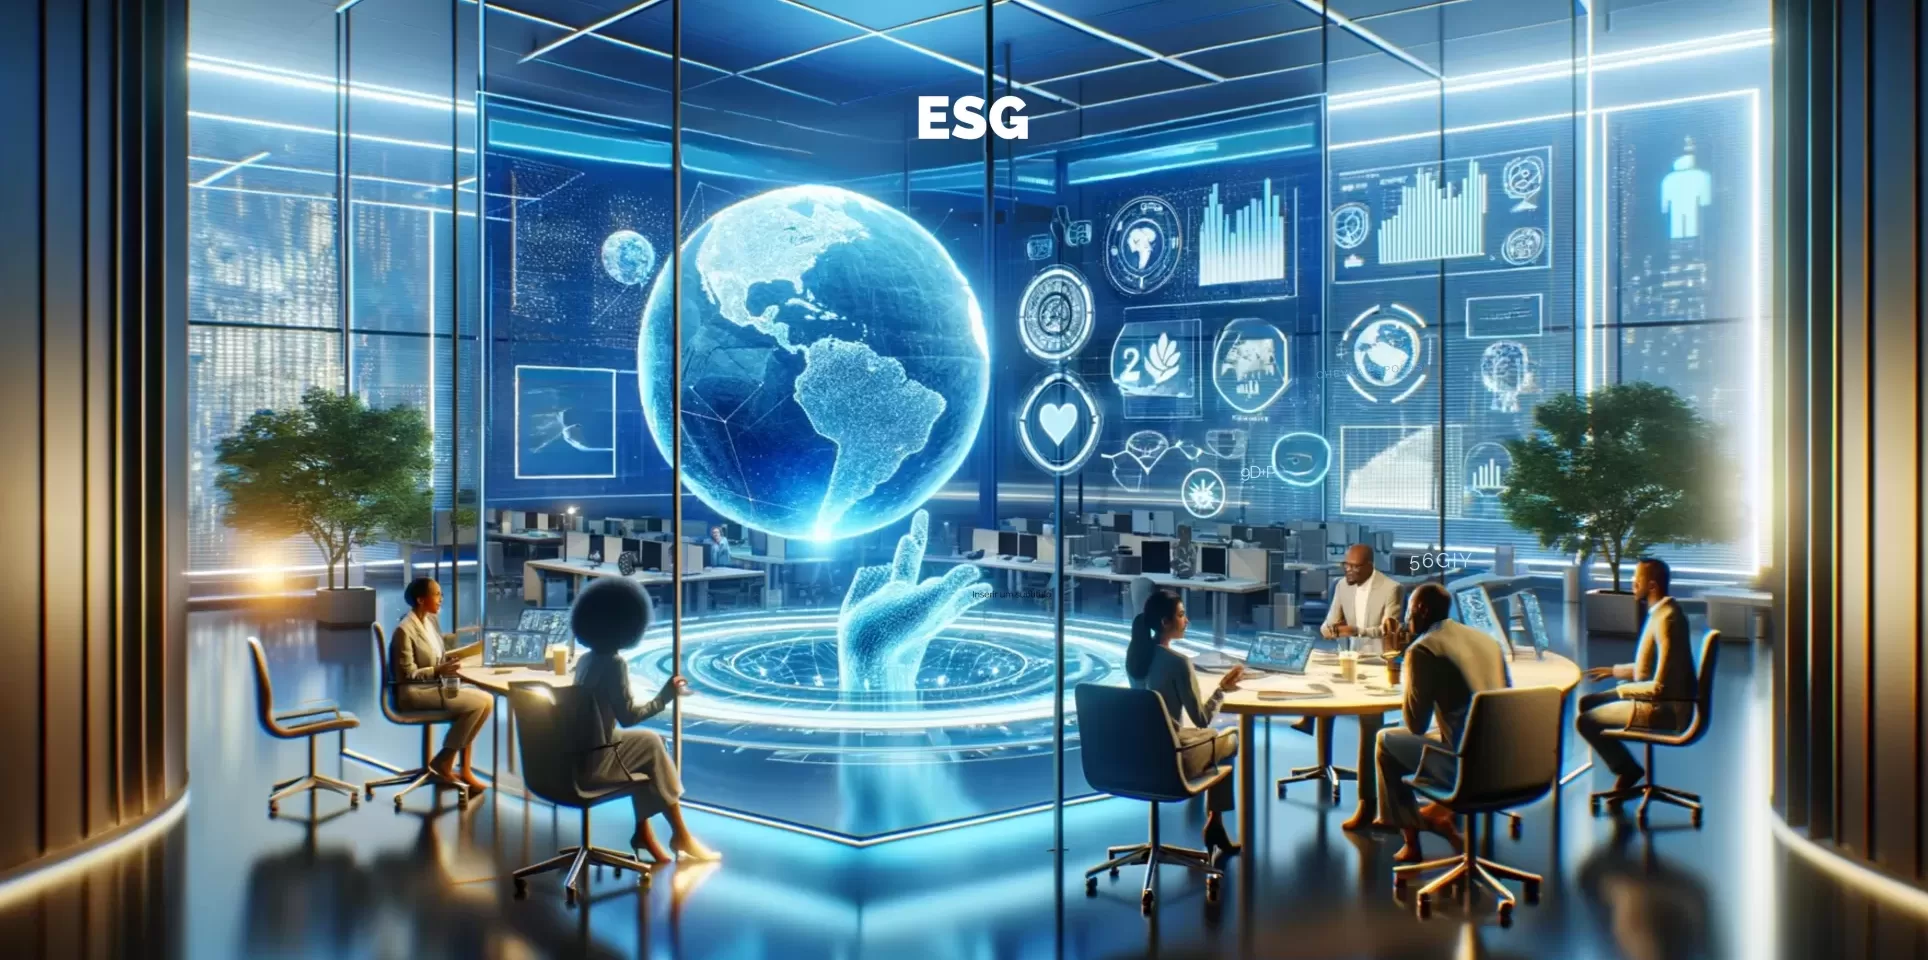 ESG Descomplicado: Significado, Benefícios e Implementação Efetiva.